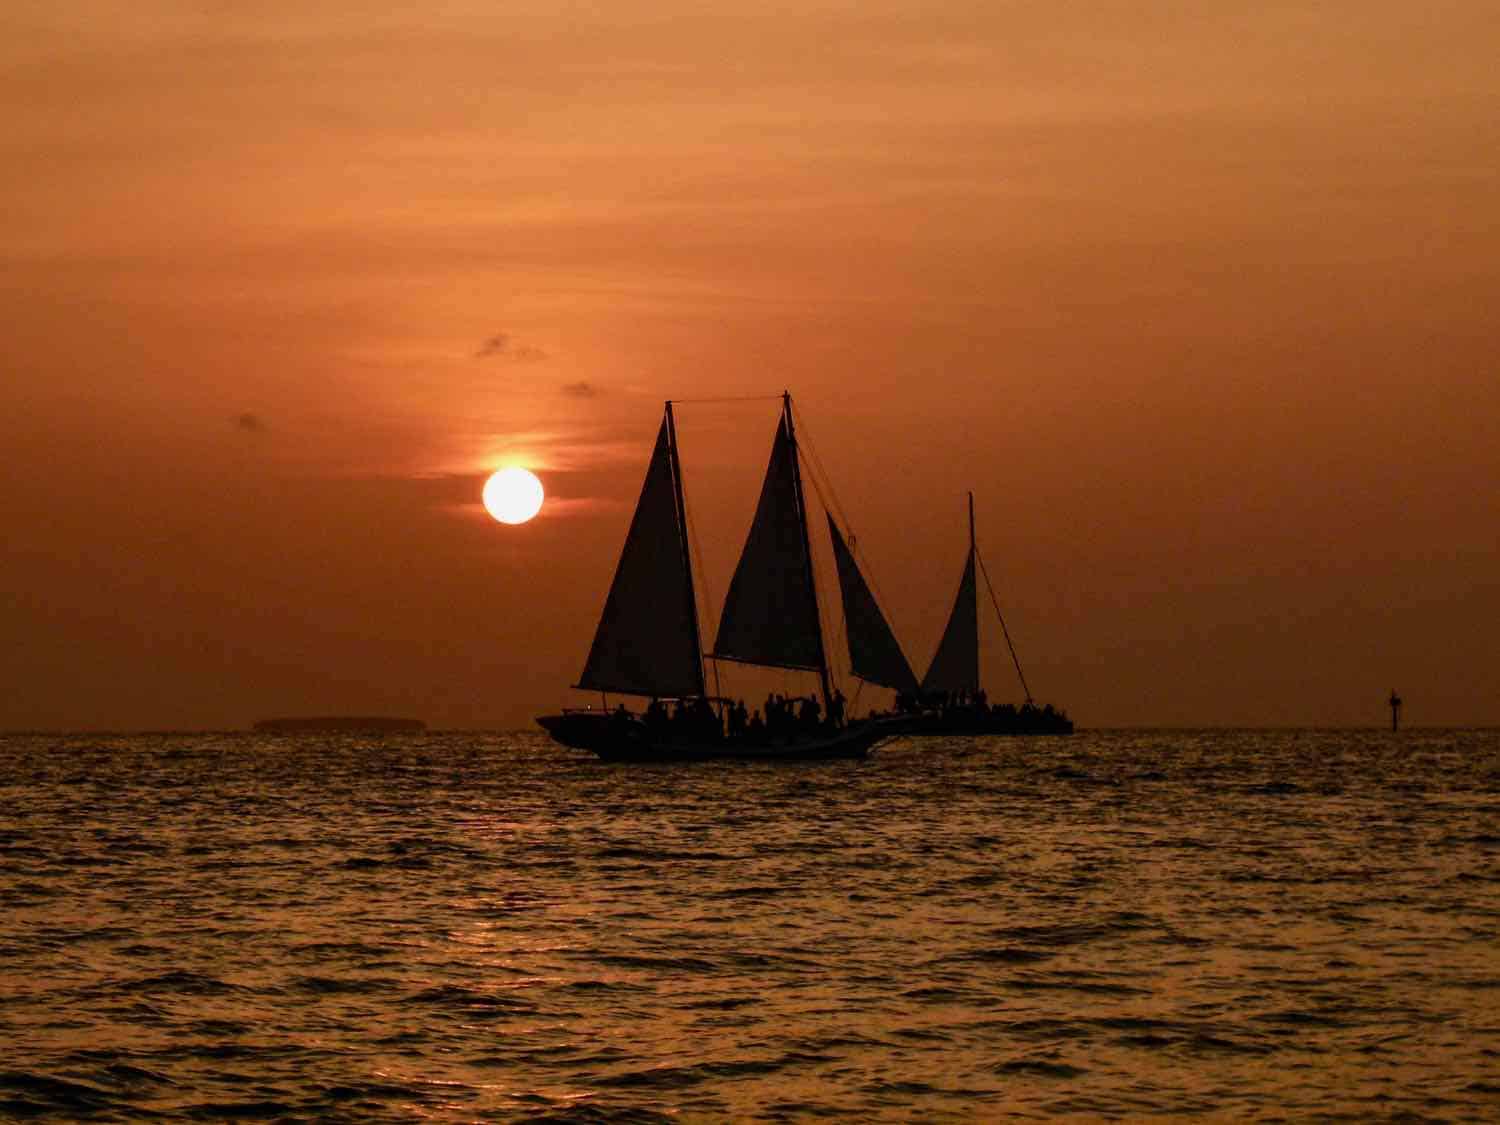 sailing ships at sunset